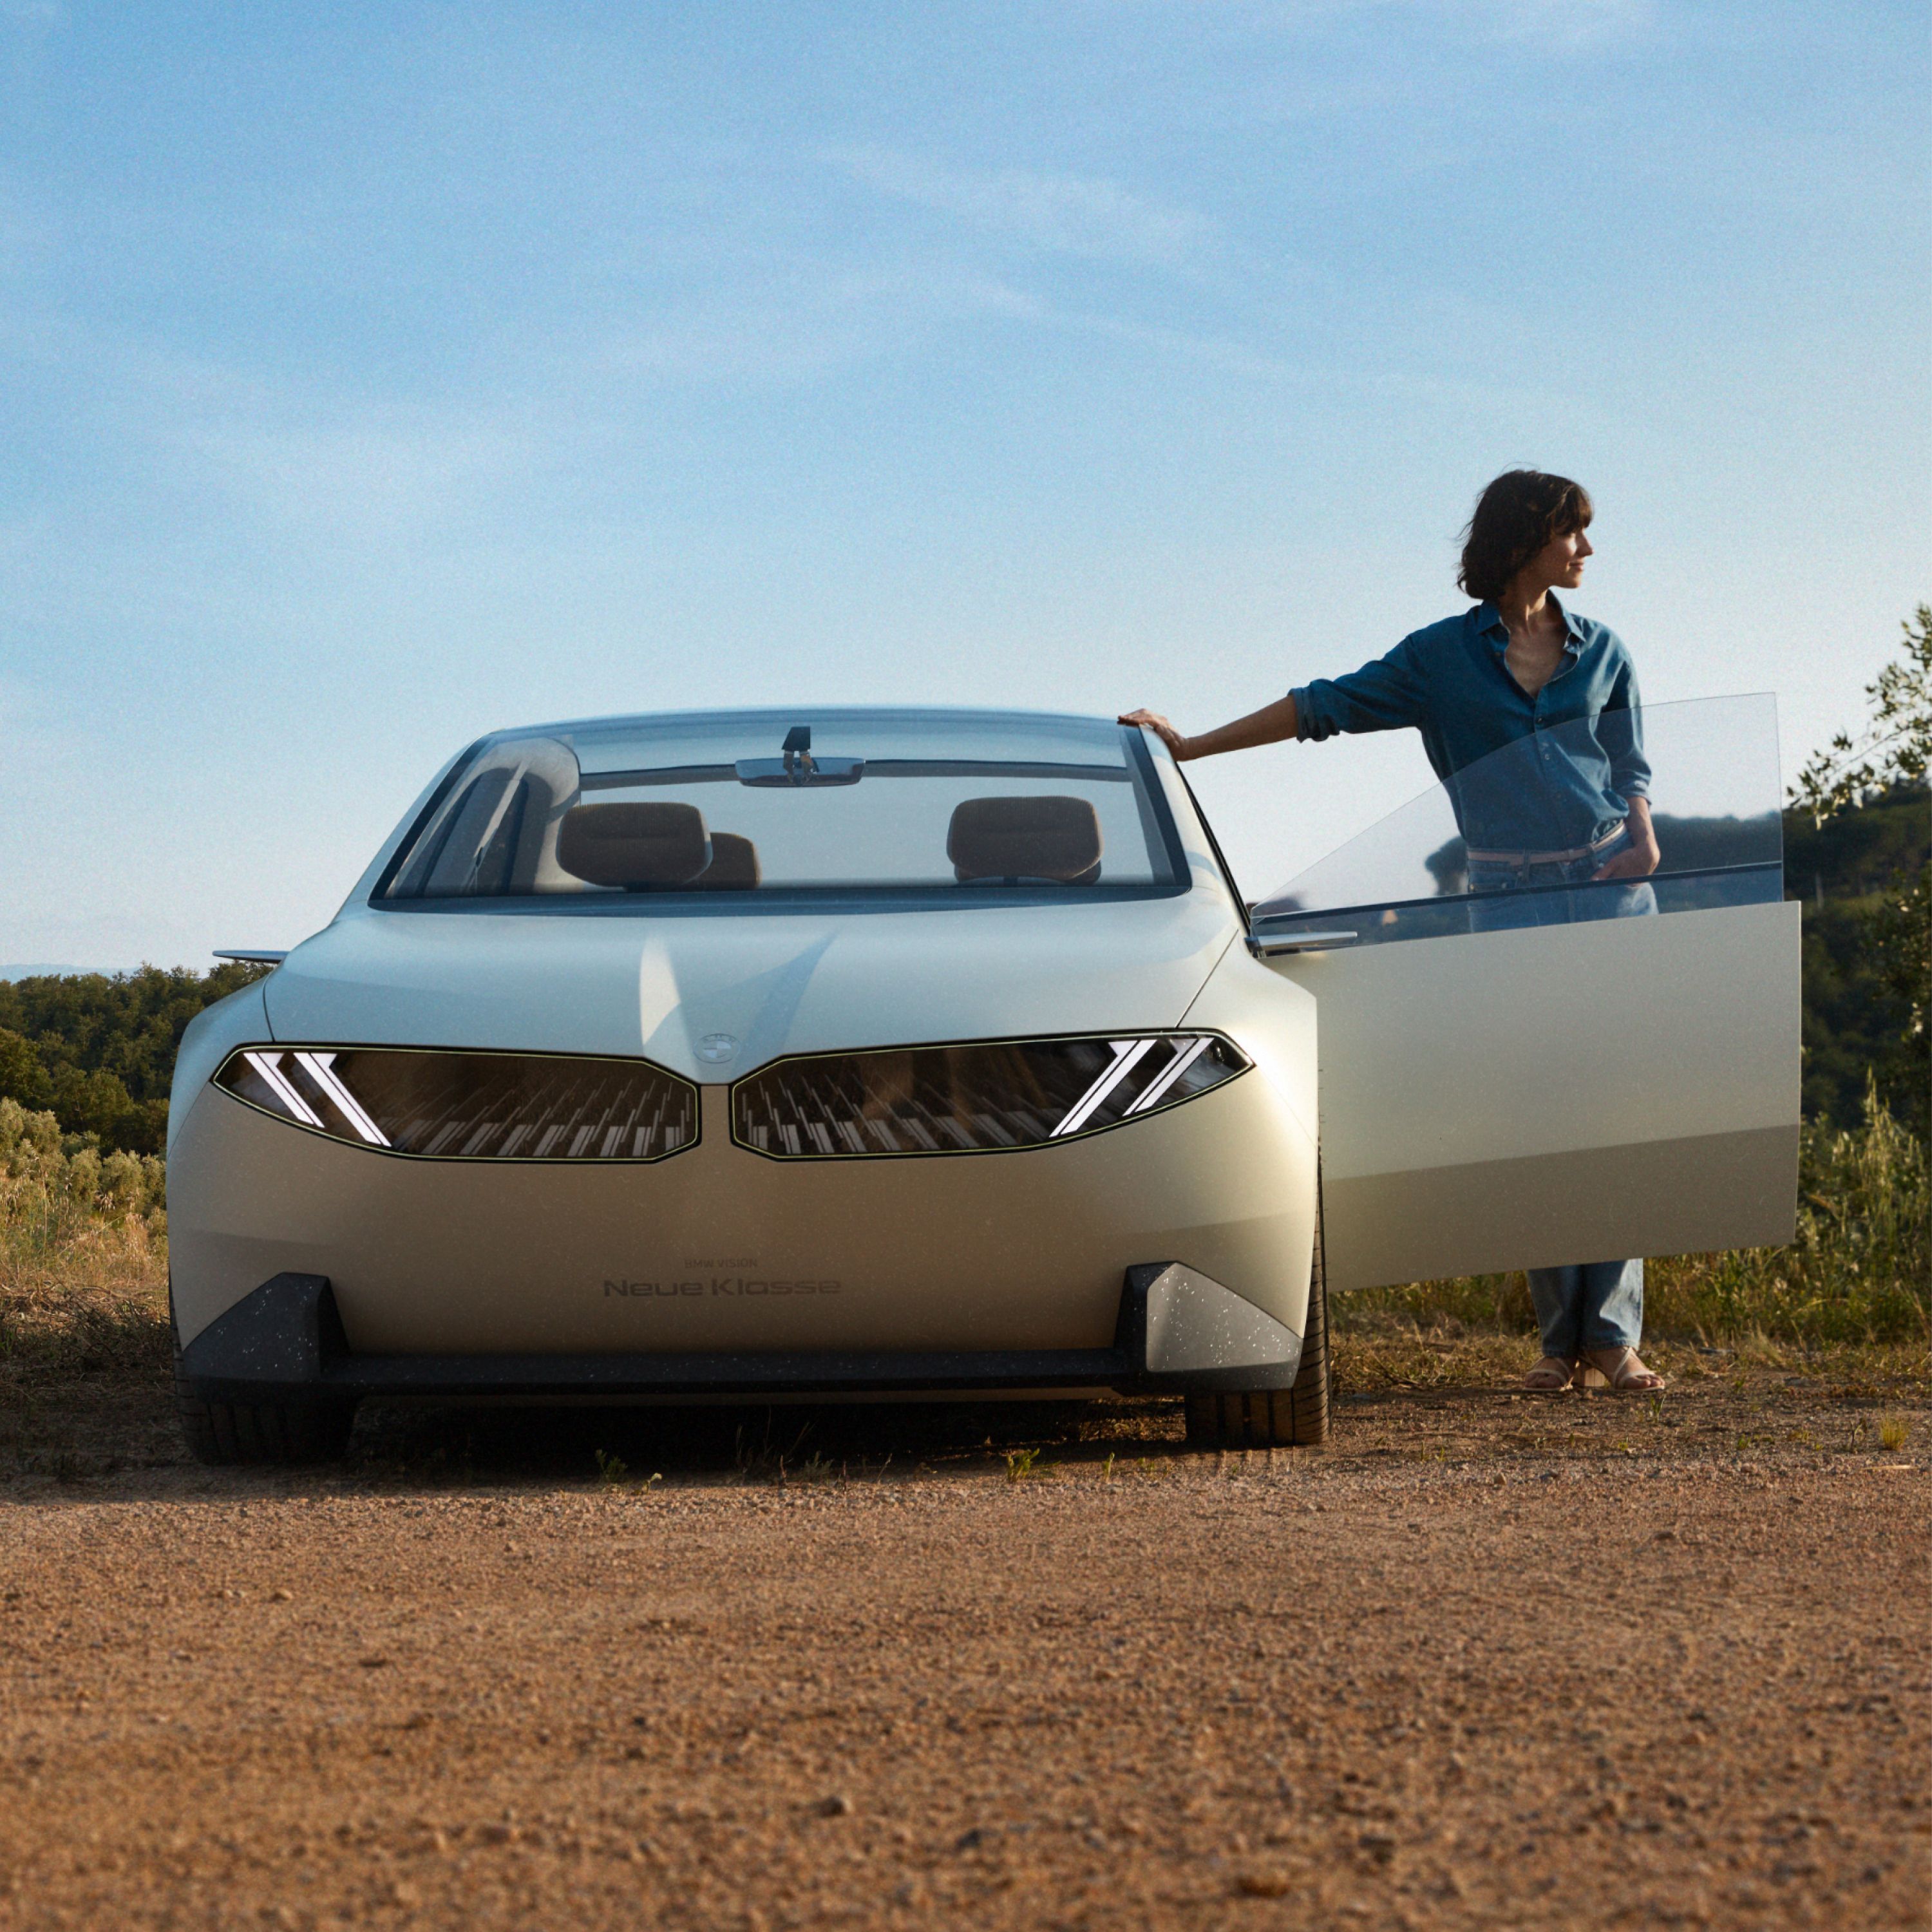 BMW Vision Neue Klasse concept car 2023, extérieur, vue de face, garée dans le désert, porte ouverte, avec une femme